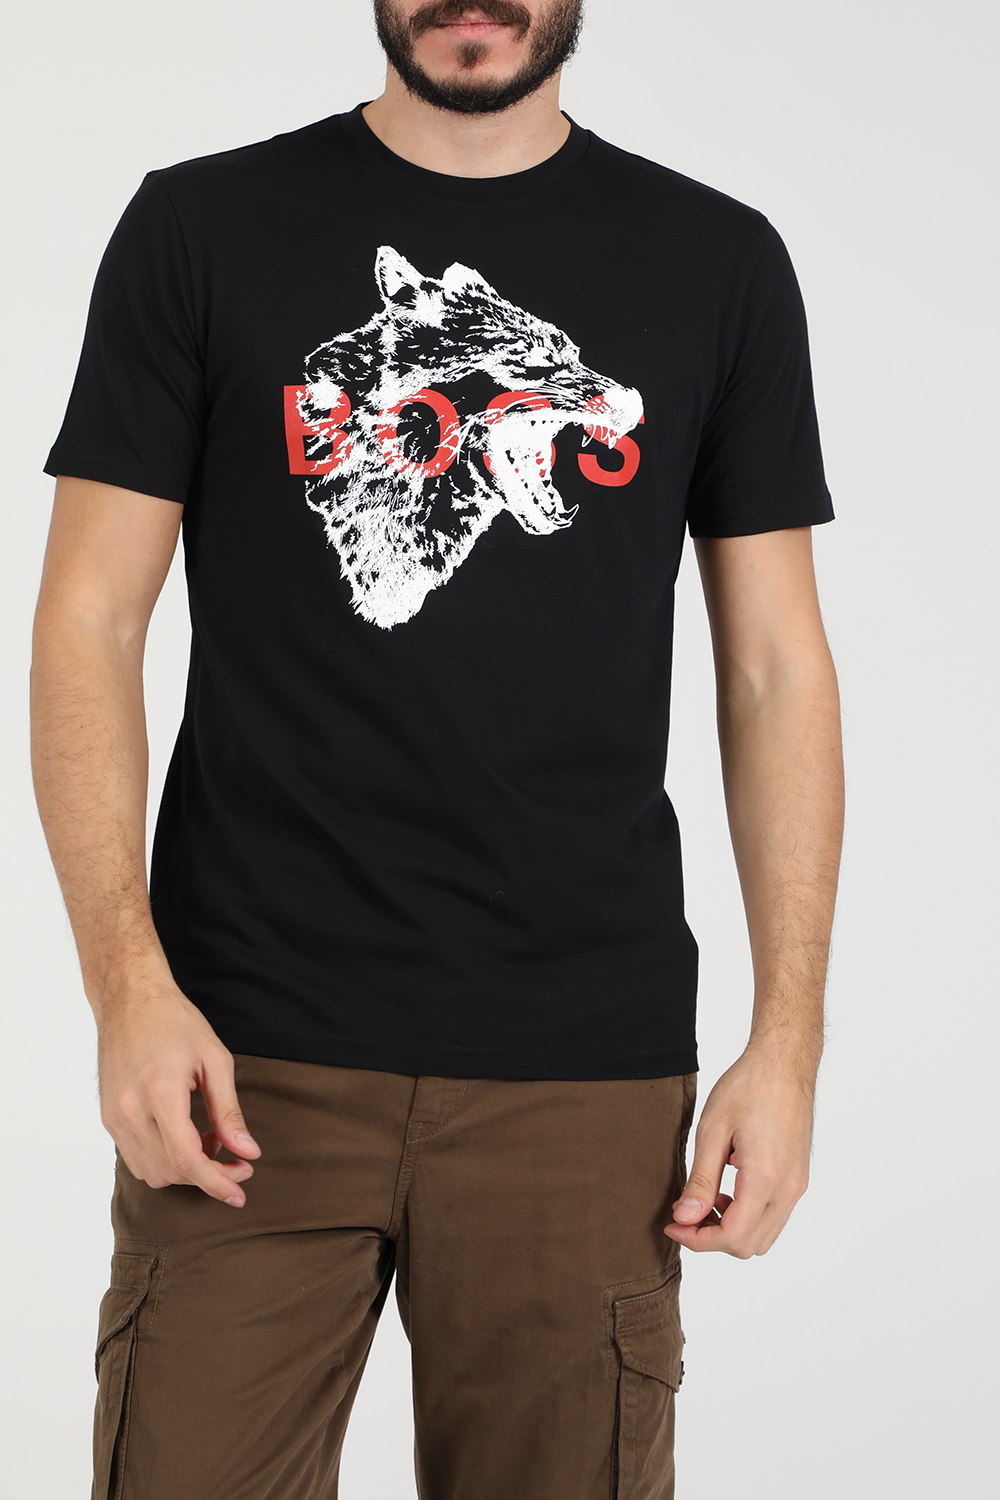 Ανδρικά/Ρούχα/Μπλούζες/Κοντομάνικες BOSS - Ανδρικό t-shirt BOSS TDraw μαύρο